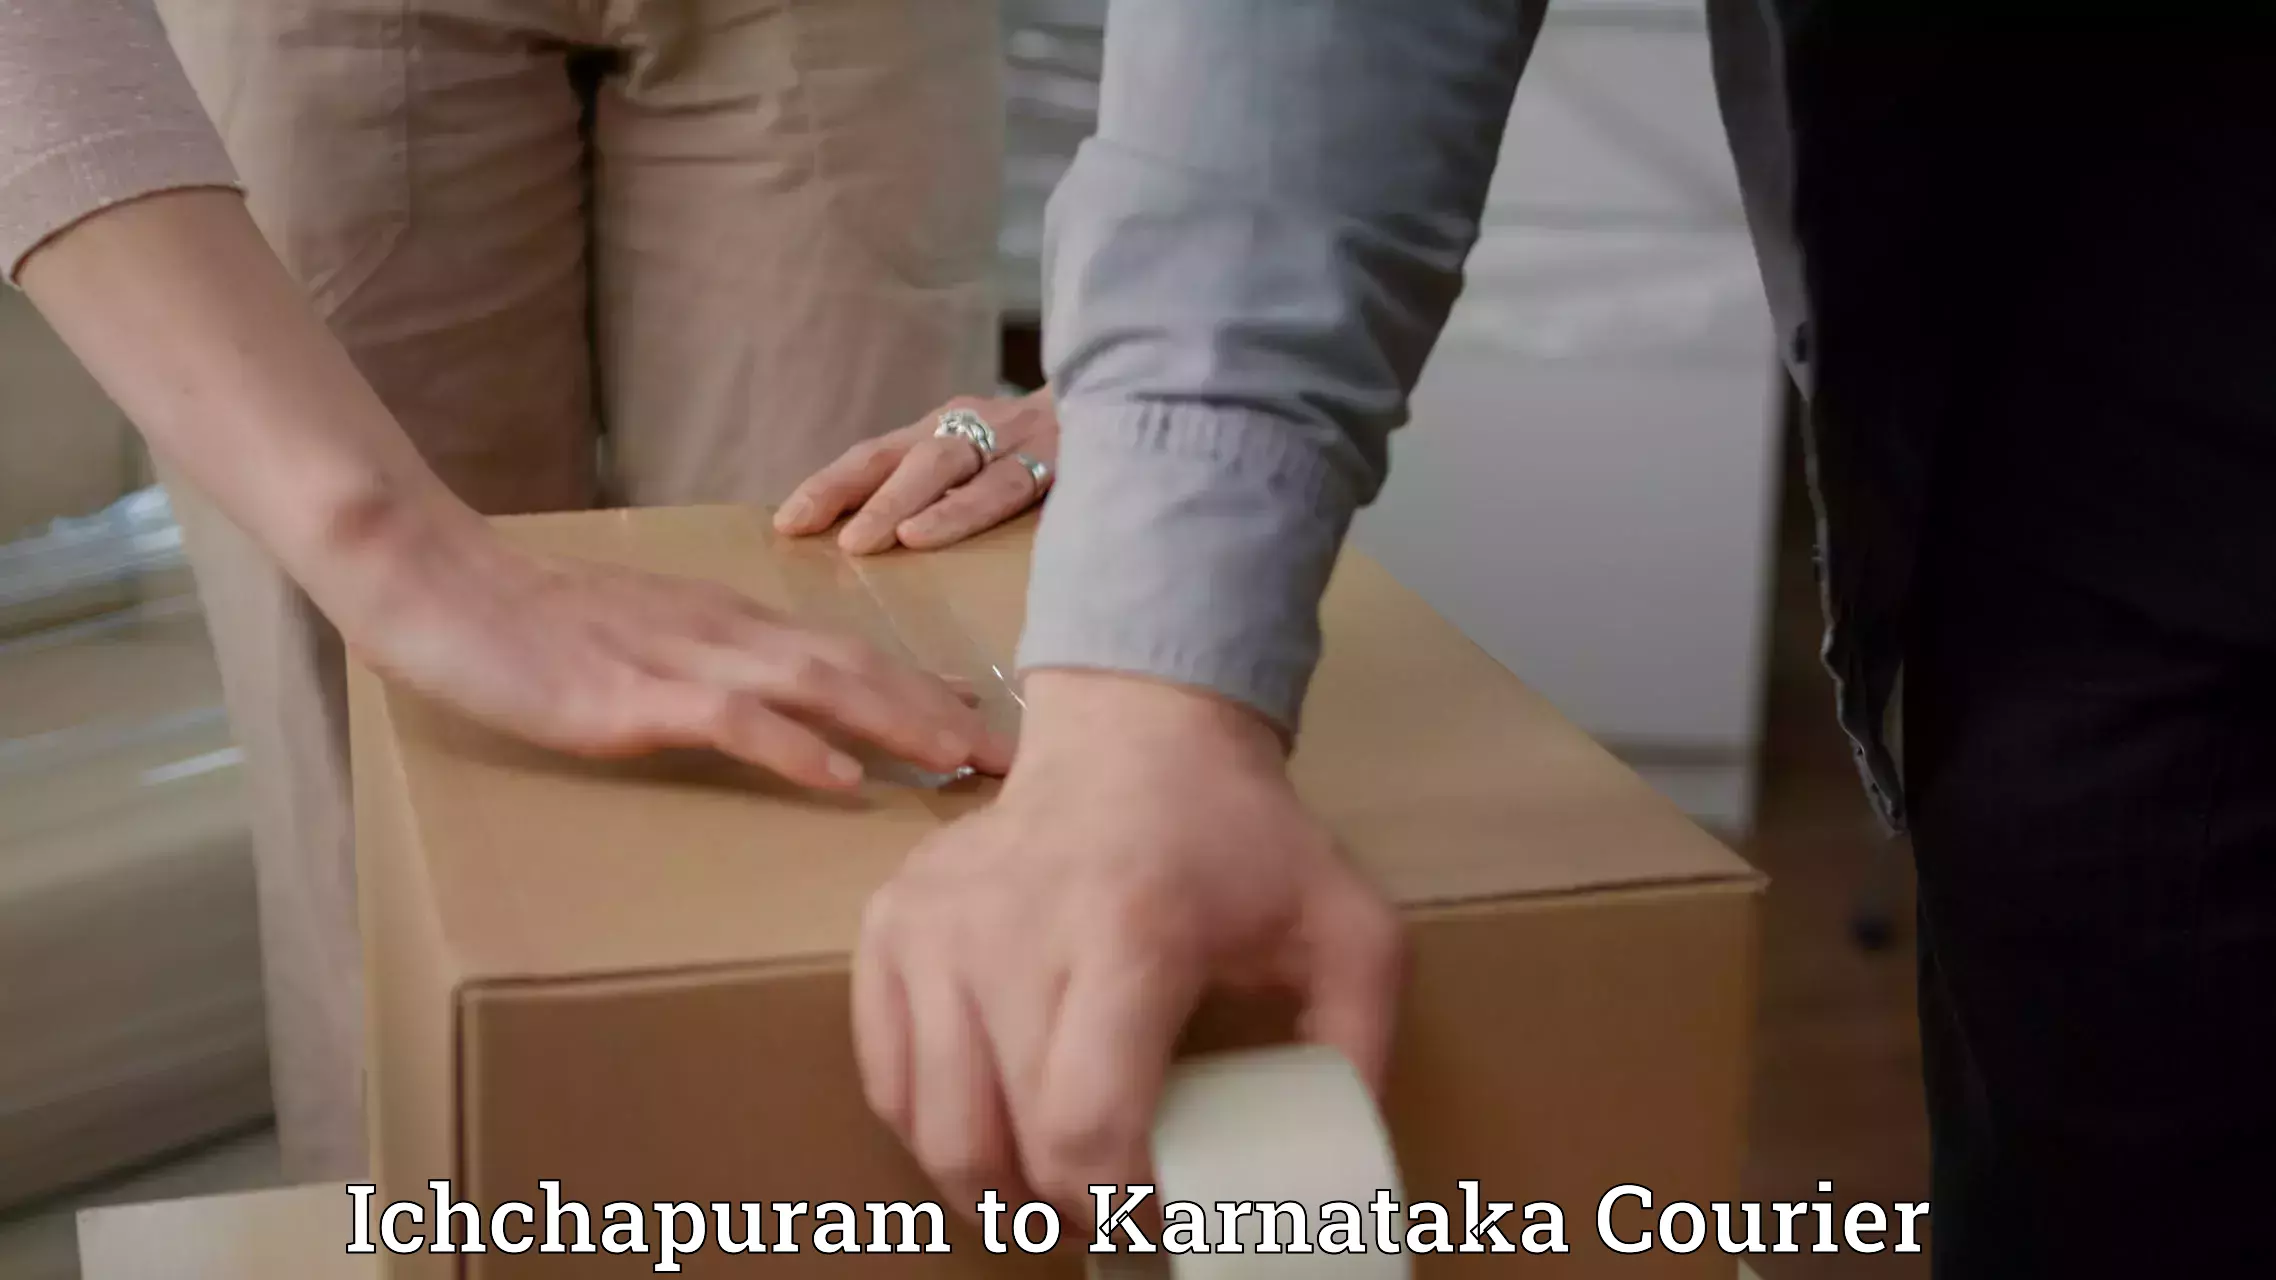 Personal courier services Ichchapuram to Piriyapatna